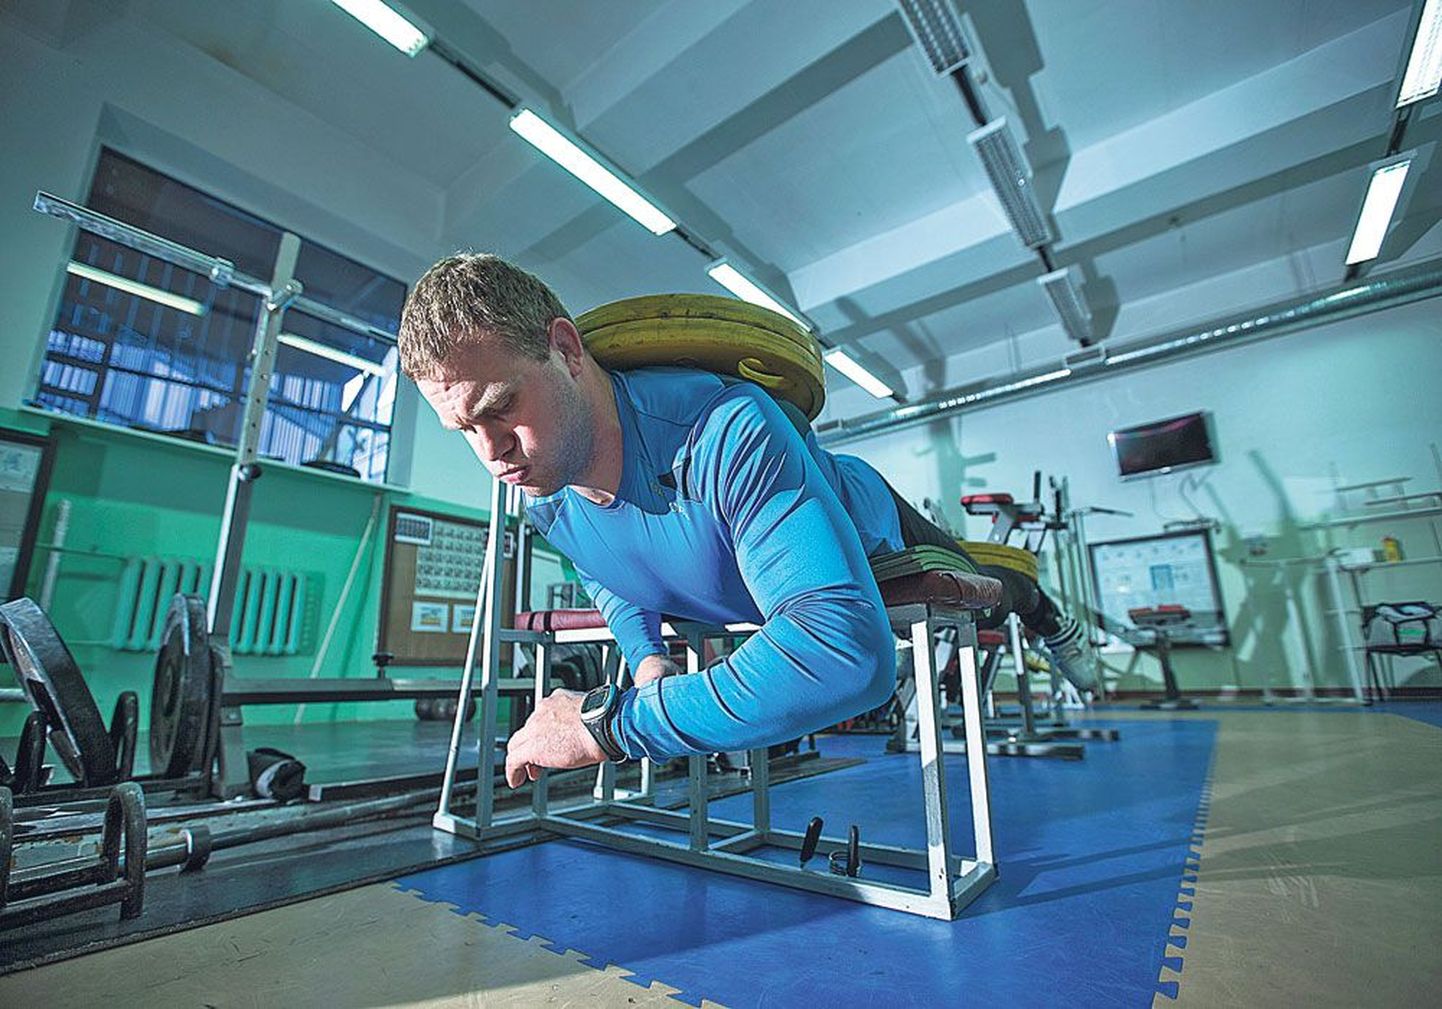 Тренировка накануне ЧМ по борьбе: Хейки Наби смотрит на часы, чтобы вовремя завершить статическое упражнение для спины. На спине и ногах спортсмена диски по 30 кг.